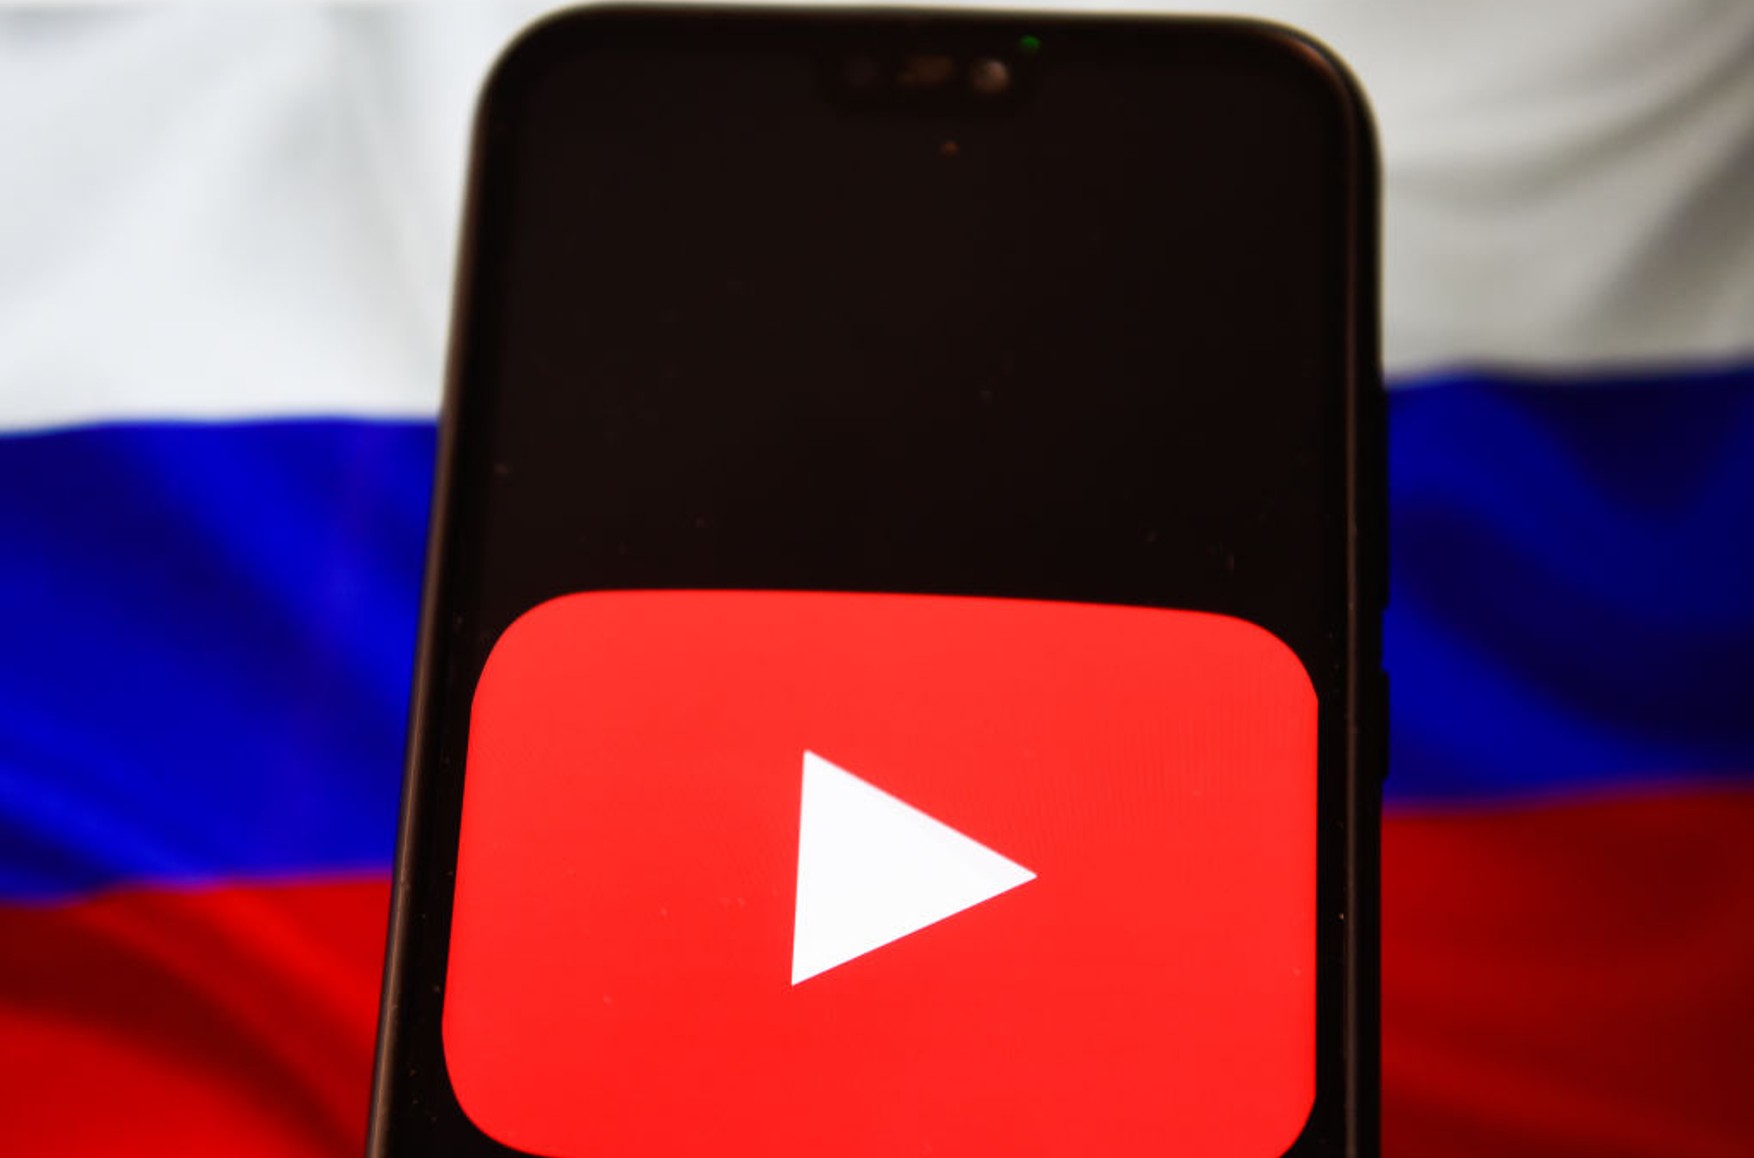 Роскомнадзор озвучил требования к YouTube. Сервису нужно удалить «противоправный и лживый контент» и снять ограничения с российских каналов